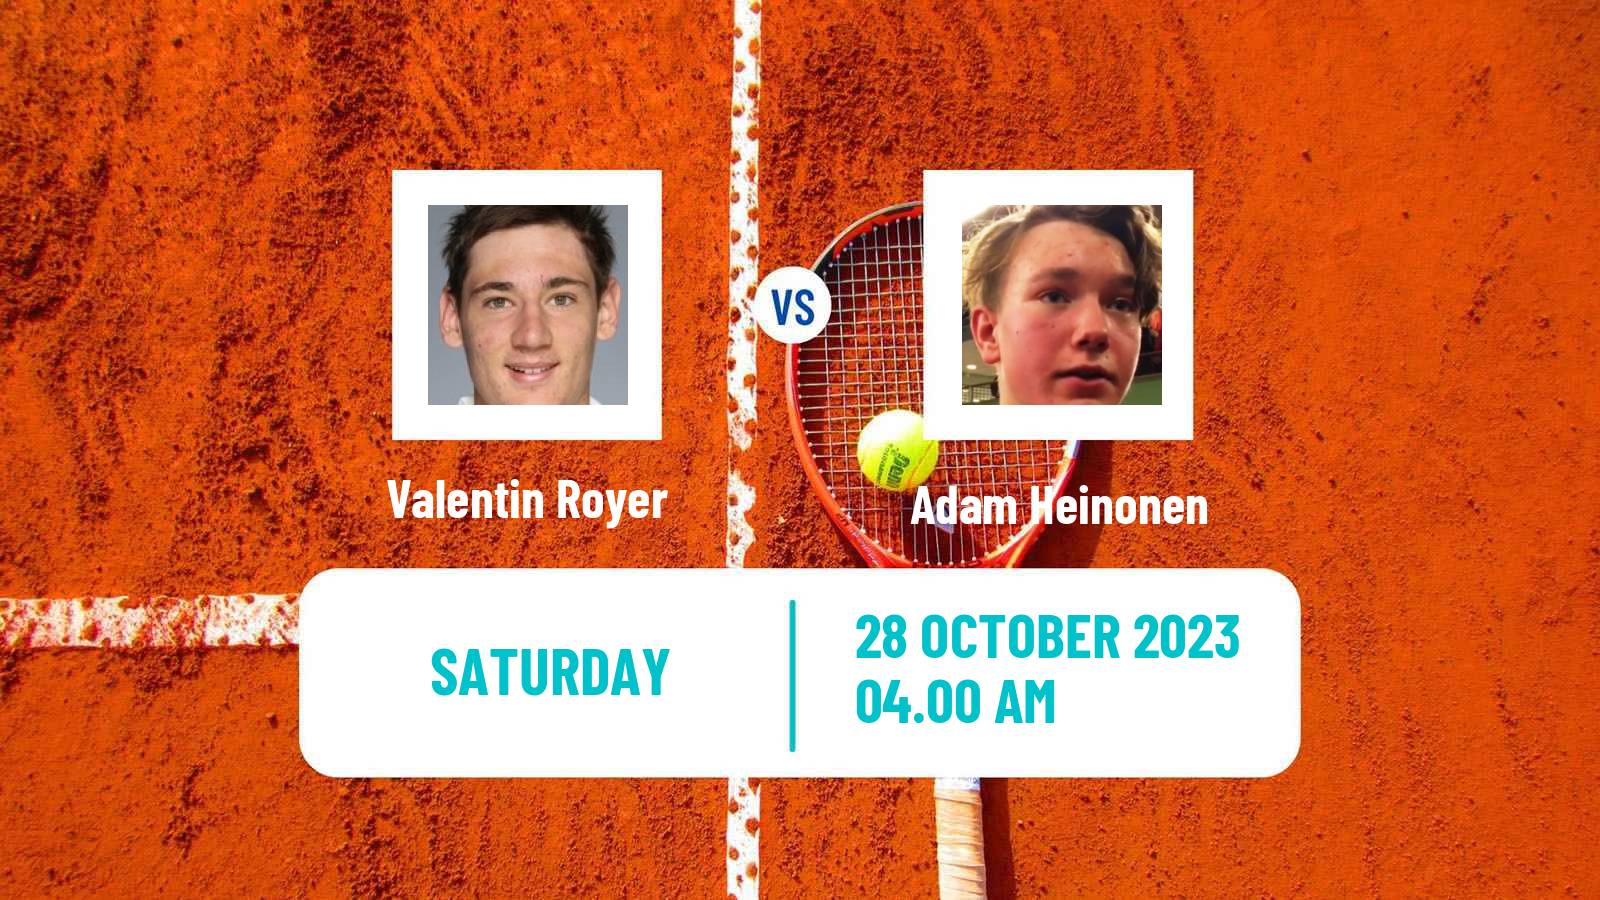 Tennis ITF M15 Heraklion 4 Men Valentin Royer - Adam Heinonen